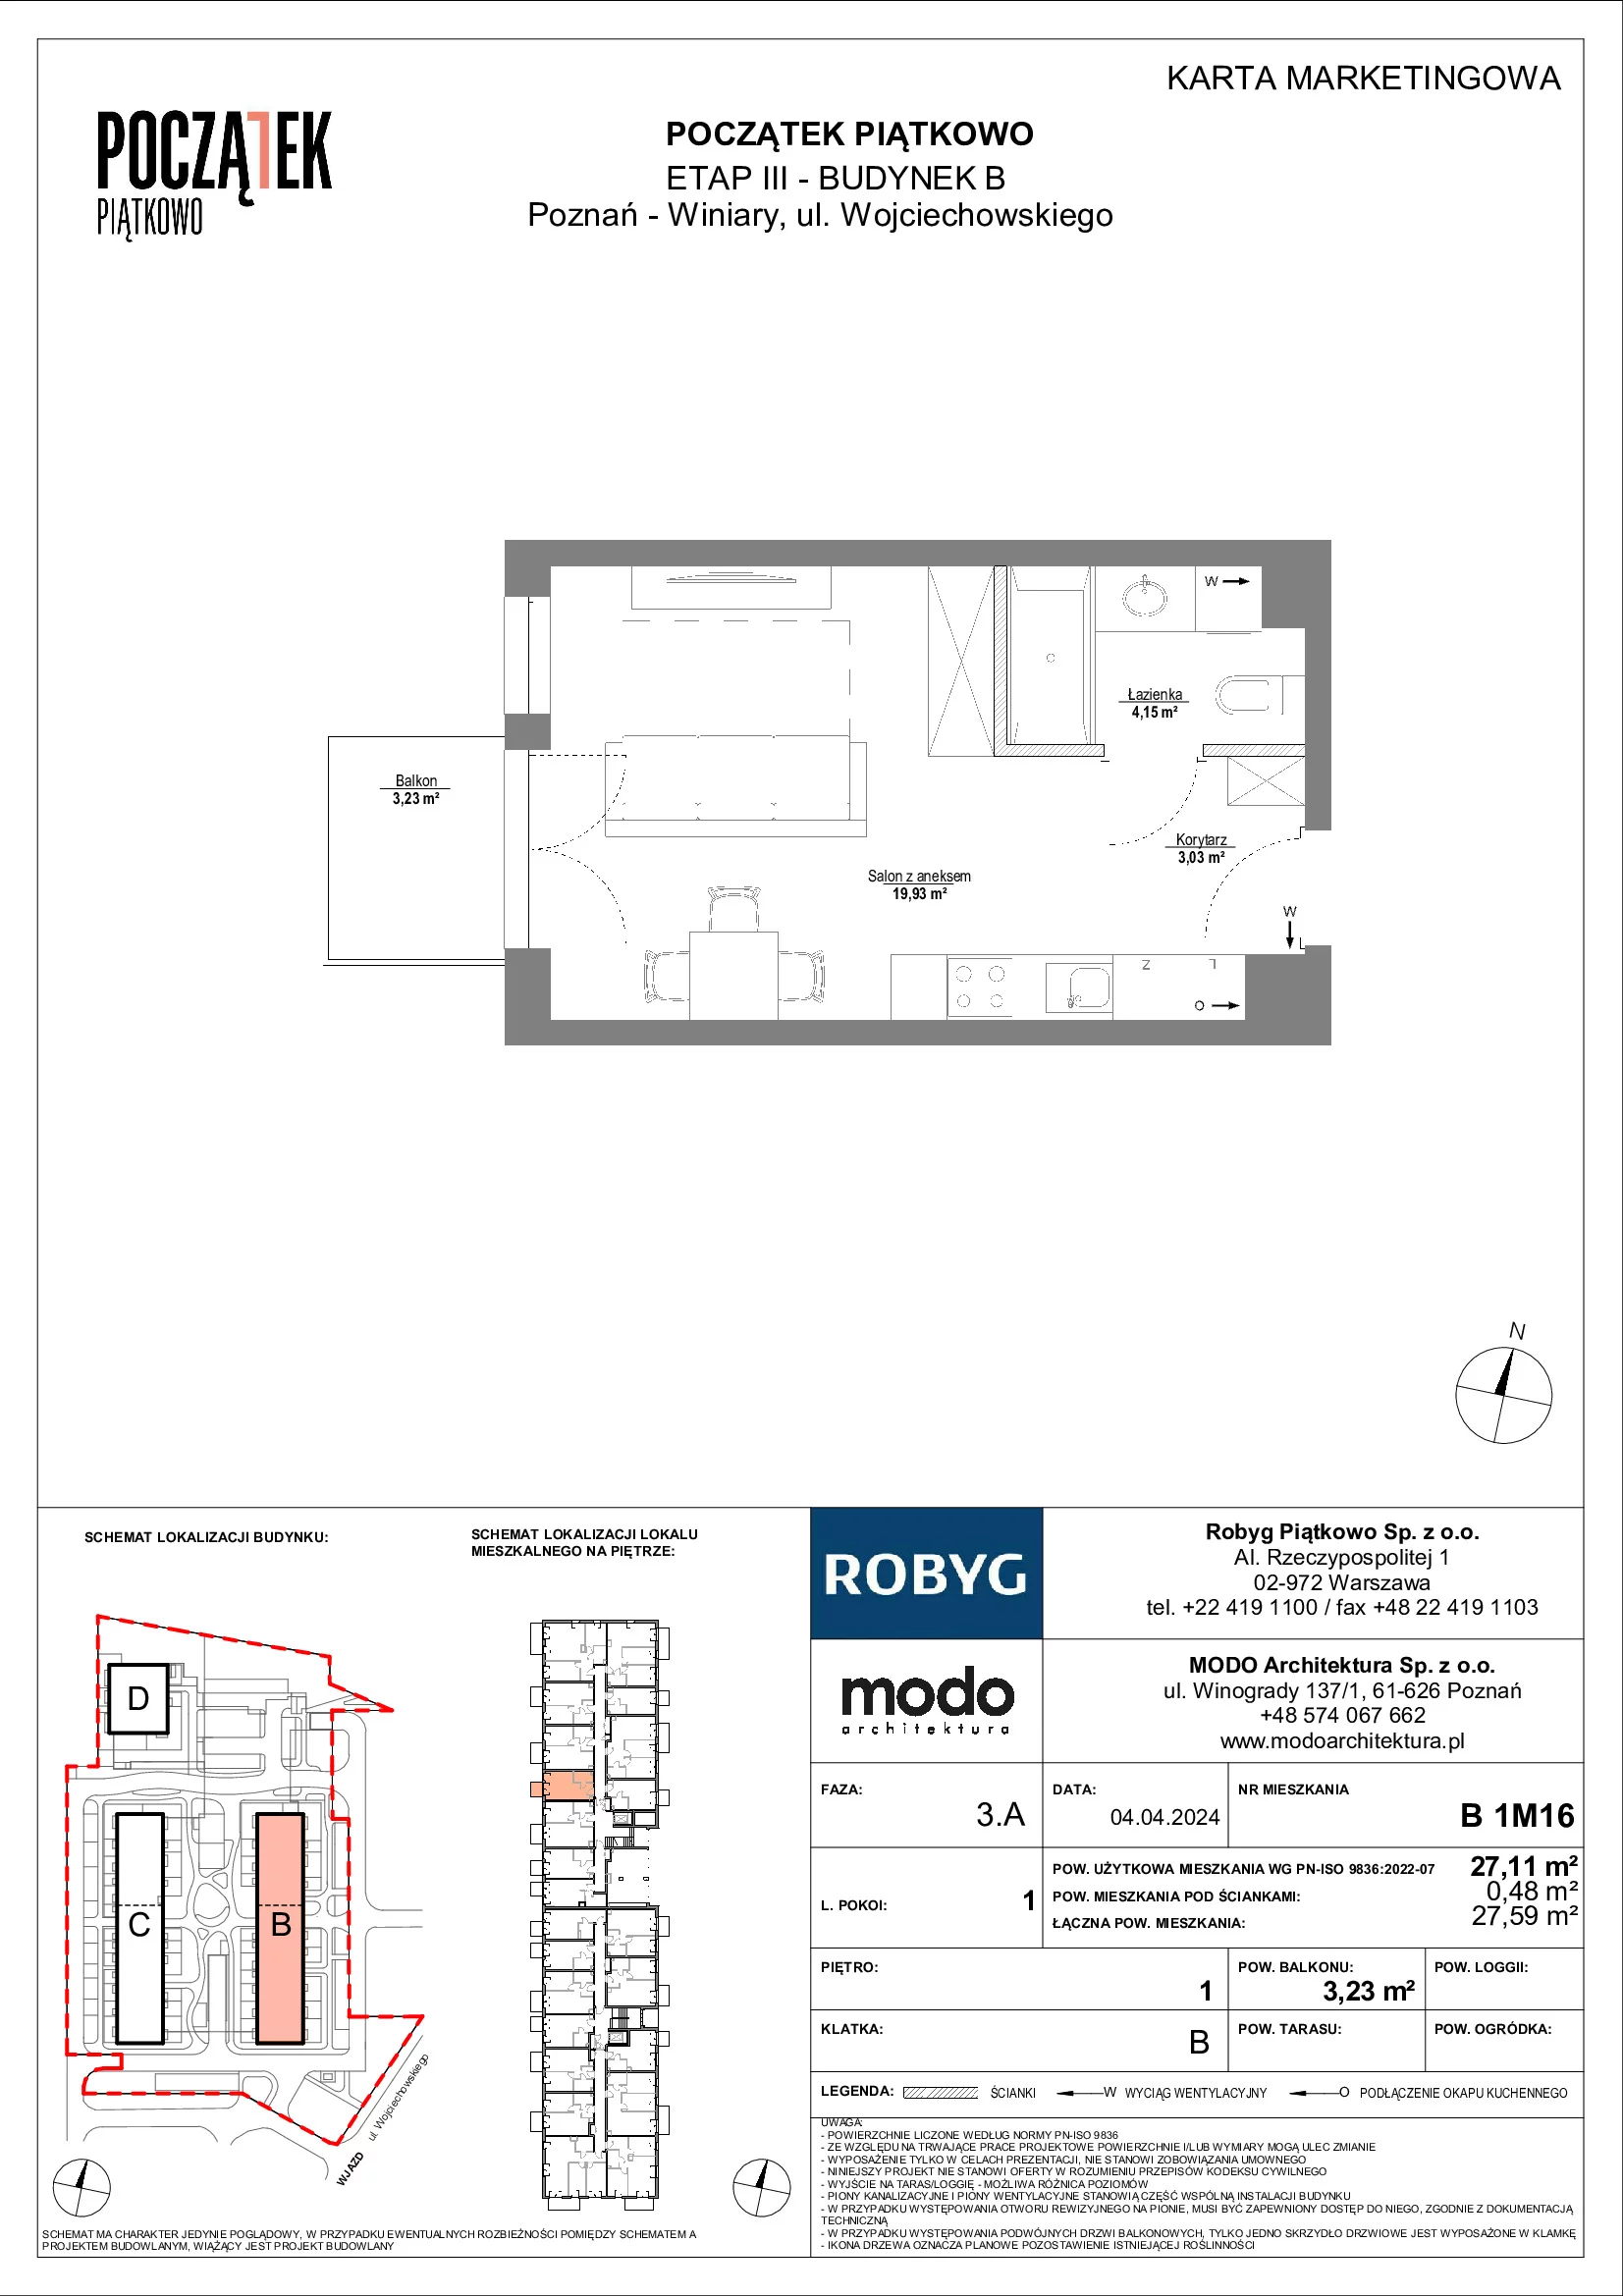 Mieszkanie 27,11 m², piętro 1, oferta nr B.1M16, Początek Piątkowo, Poznań, Piątkowo, ul. Wojciechowskiego